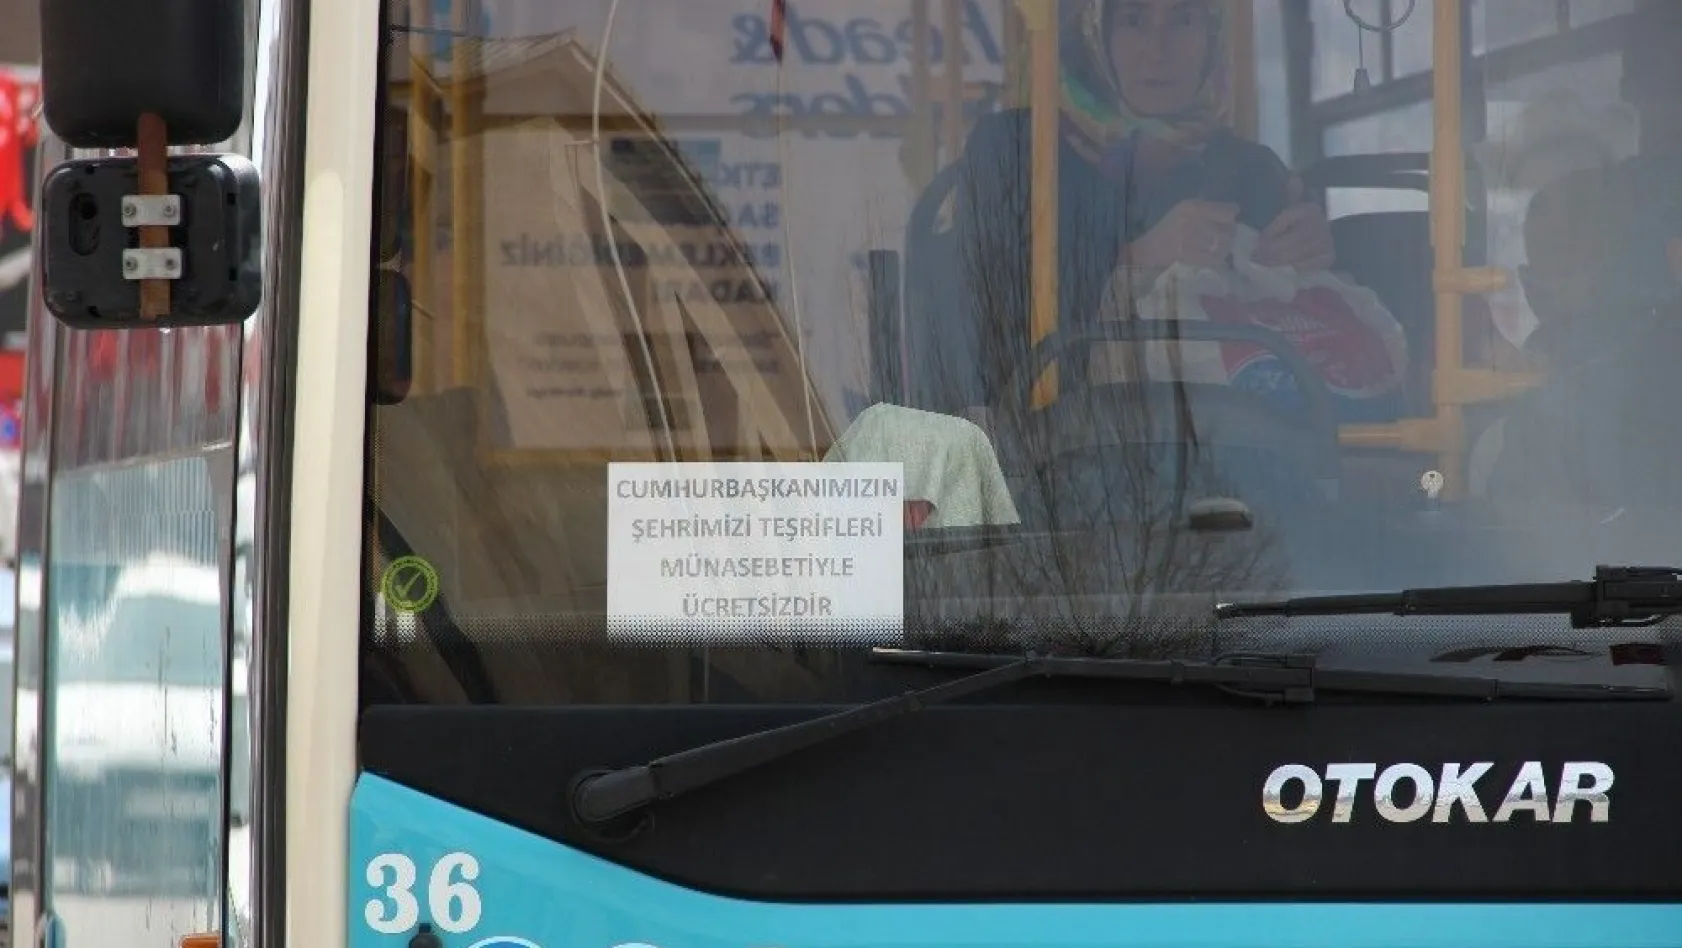 Toplu taşıma araçları bugün Erzurum'da ücretsiz
